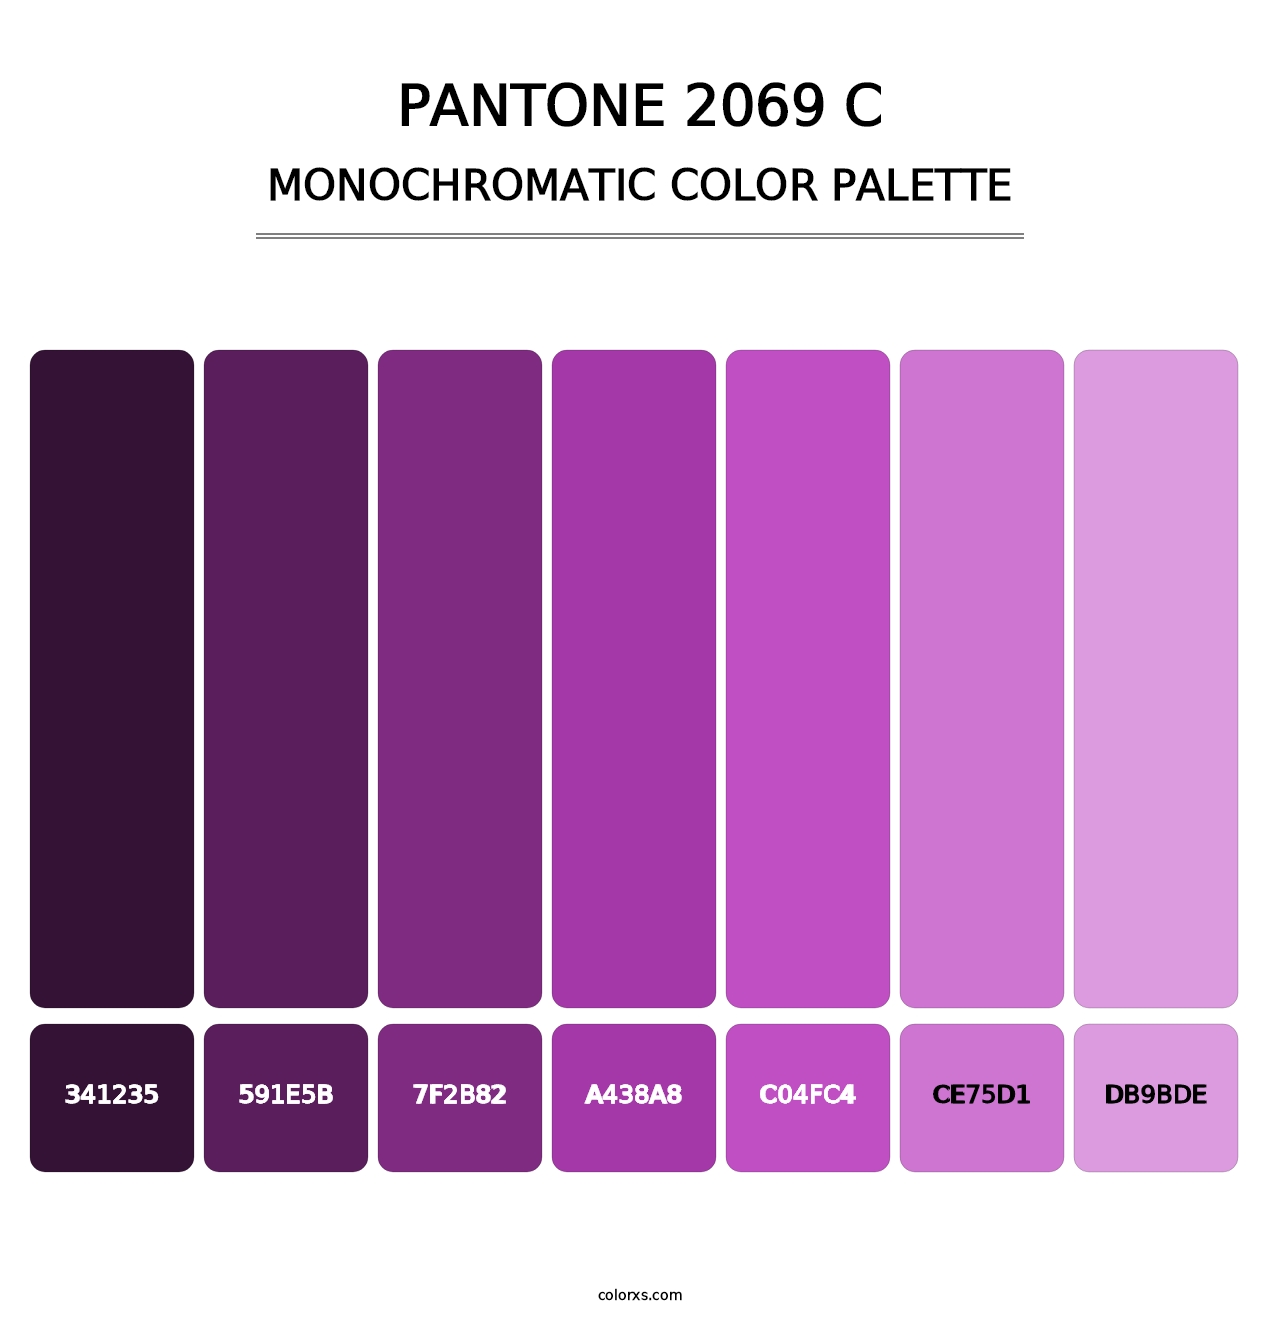 PANTONE 2069 C - Monochromatic Color Palette